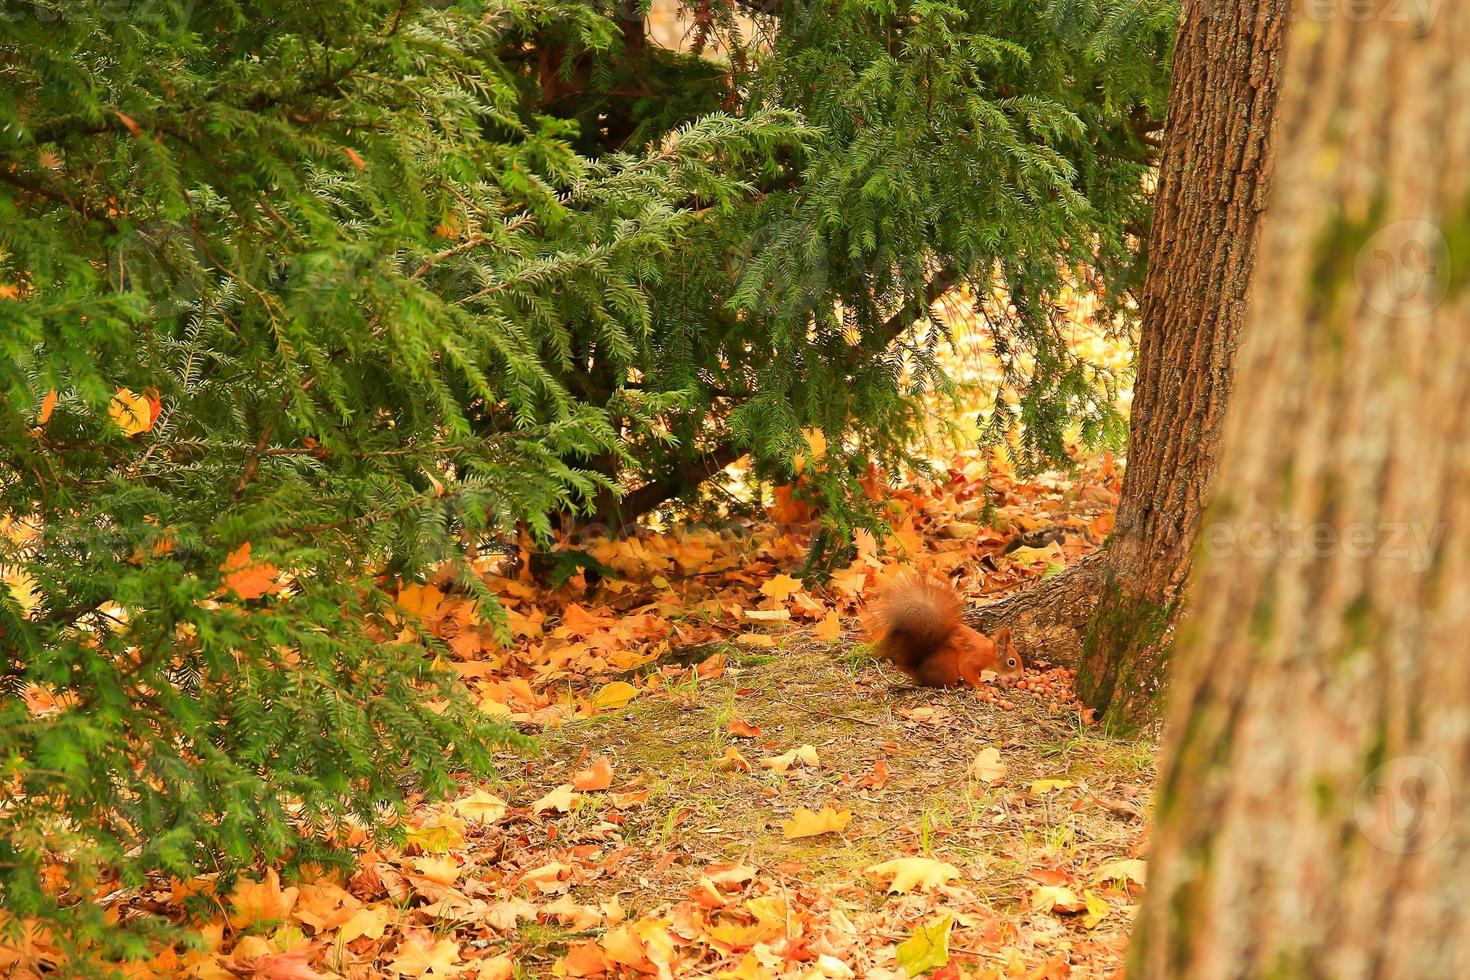 retrato de ardilla roja euroasiática trepando a un árbol y comiendo bellota foto